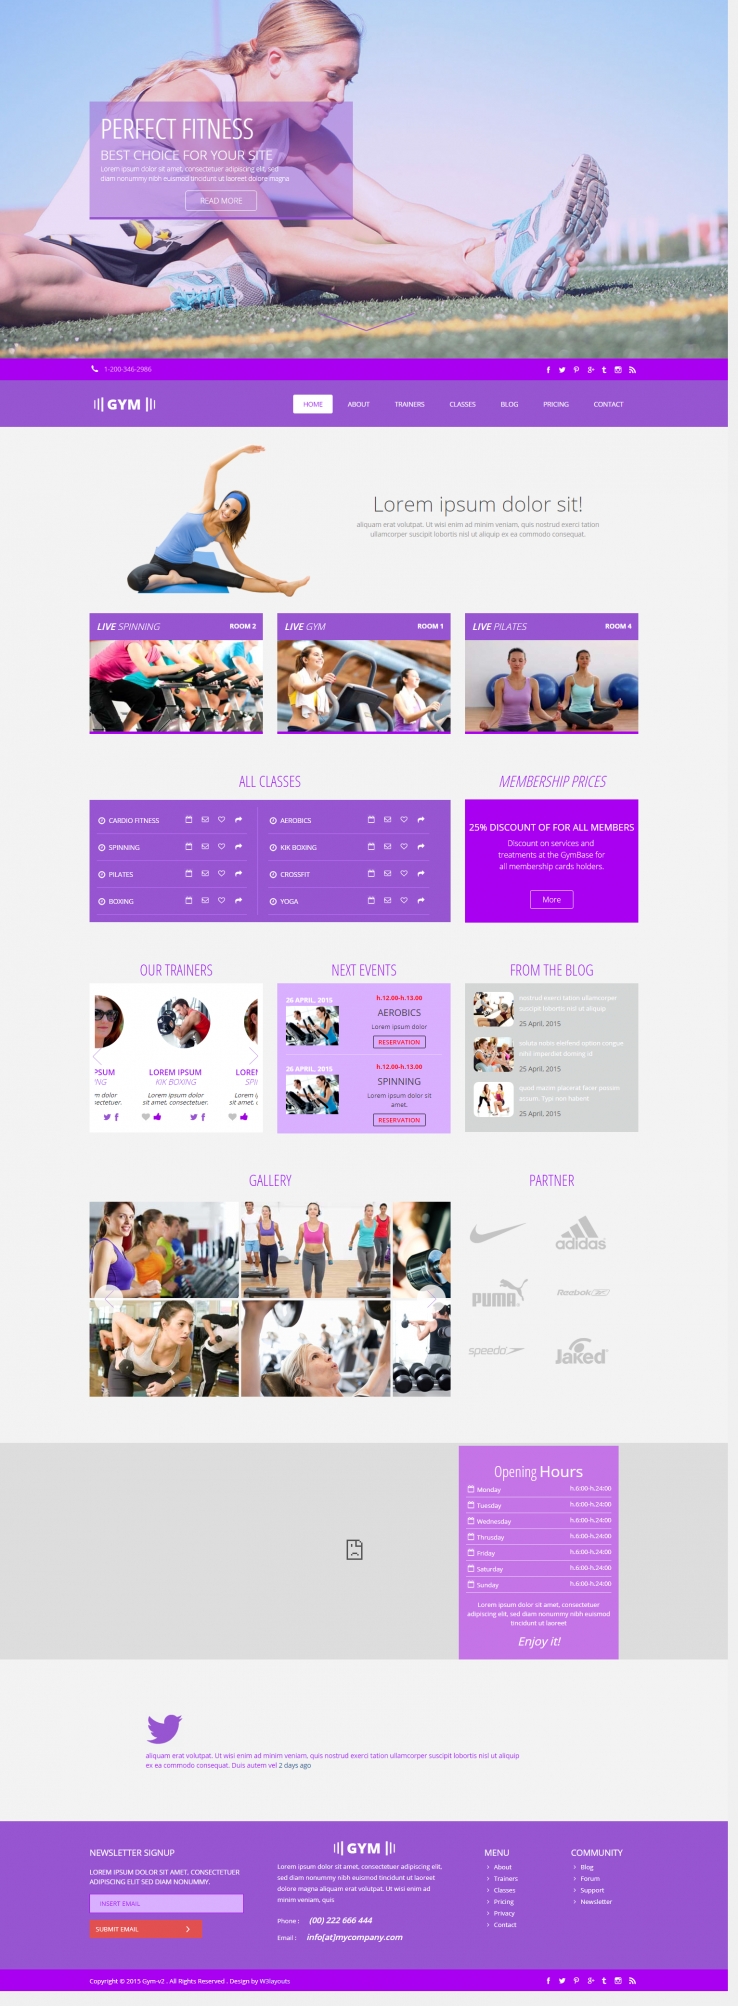 紫色简洁风格的女性健身训练整站网站源码下载